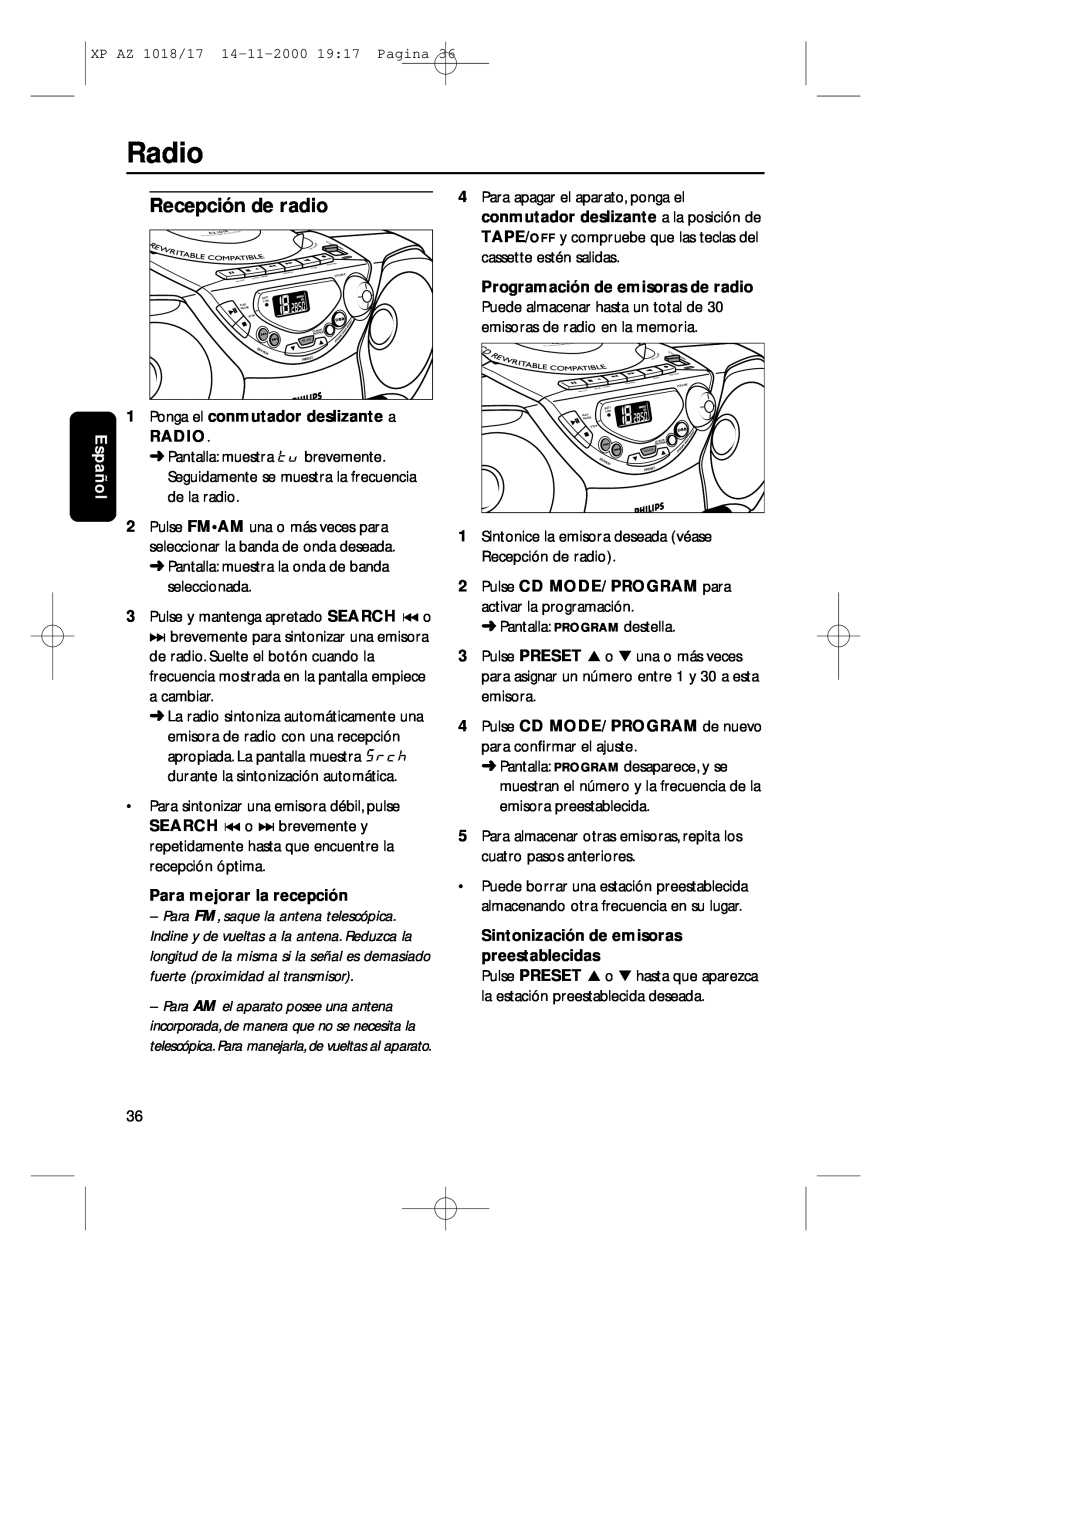 Philips 1018 manual Recepción de radio, Radio, Español, Ponga el conmutador deslizante a RADIO, Para mejorar la recepción 